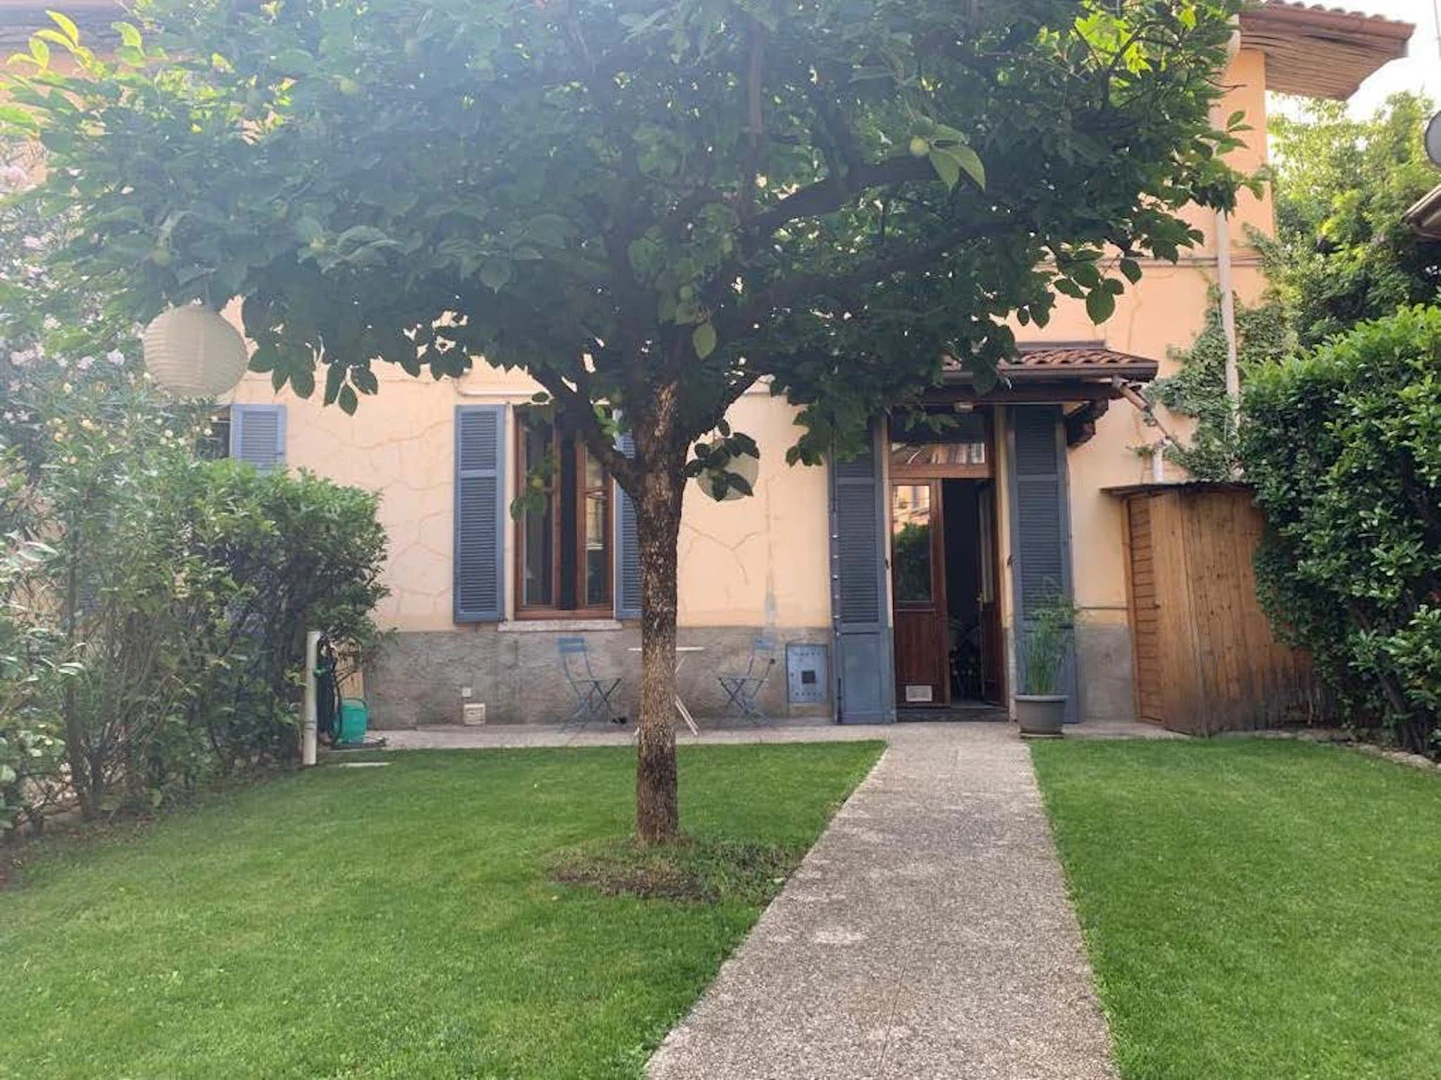 Bergamo içinde 3 yatak odalı konaklama